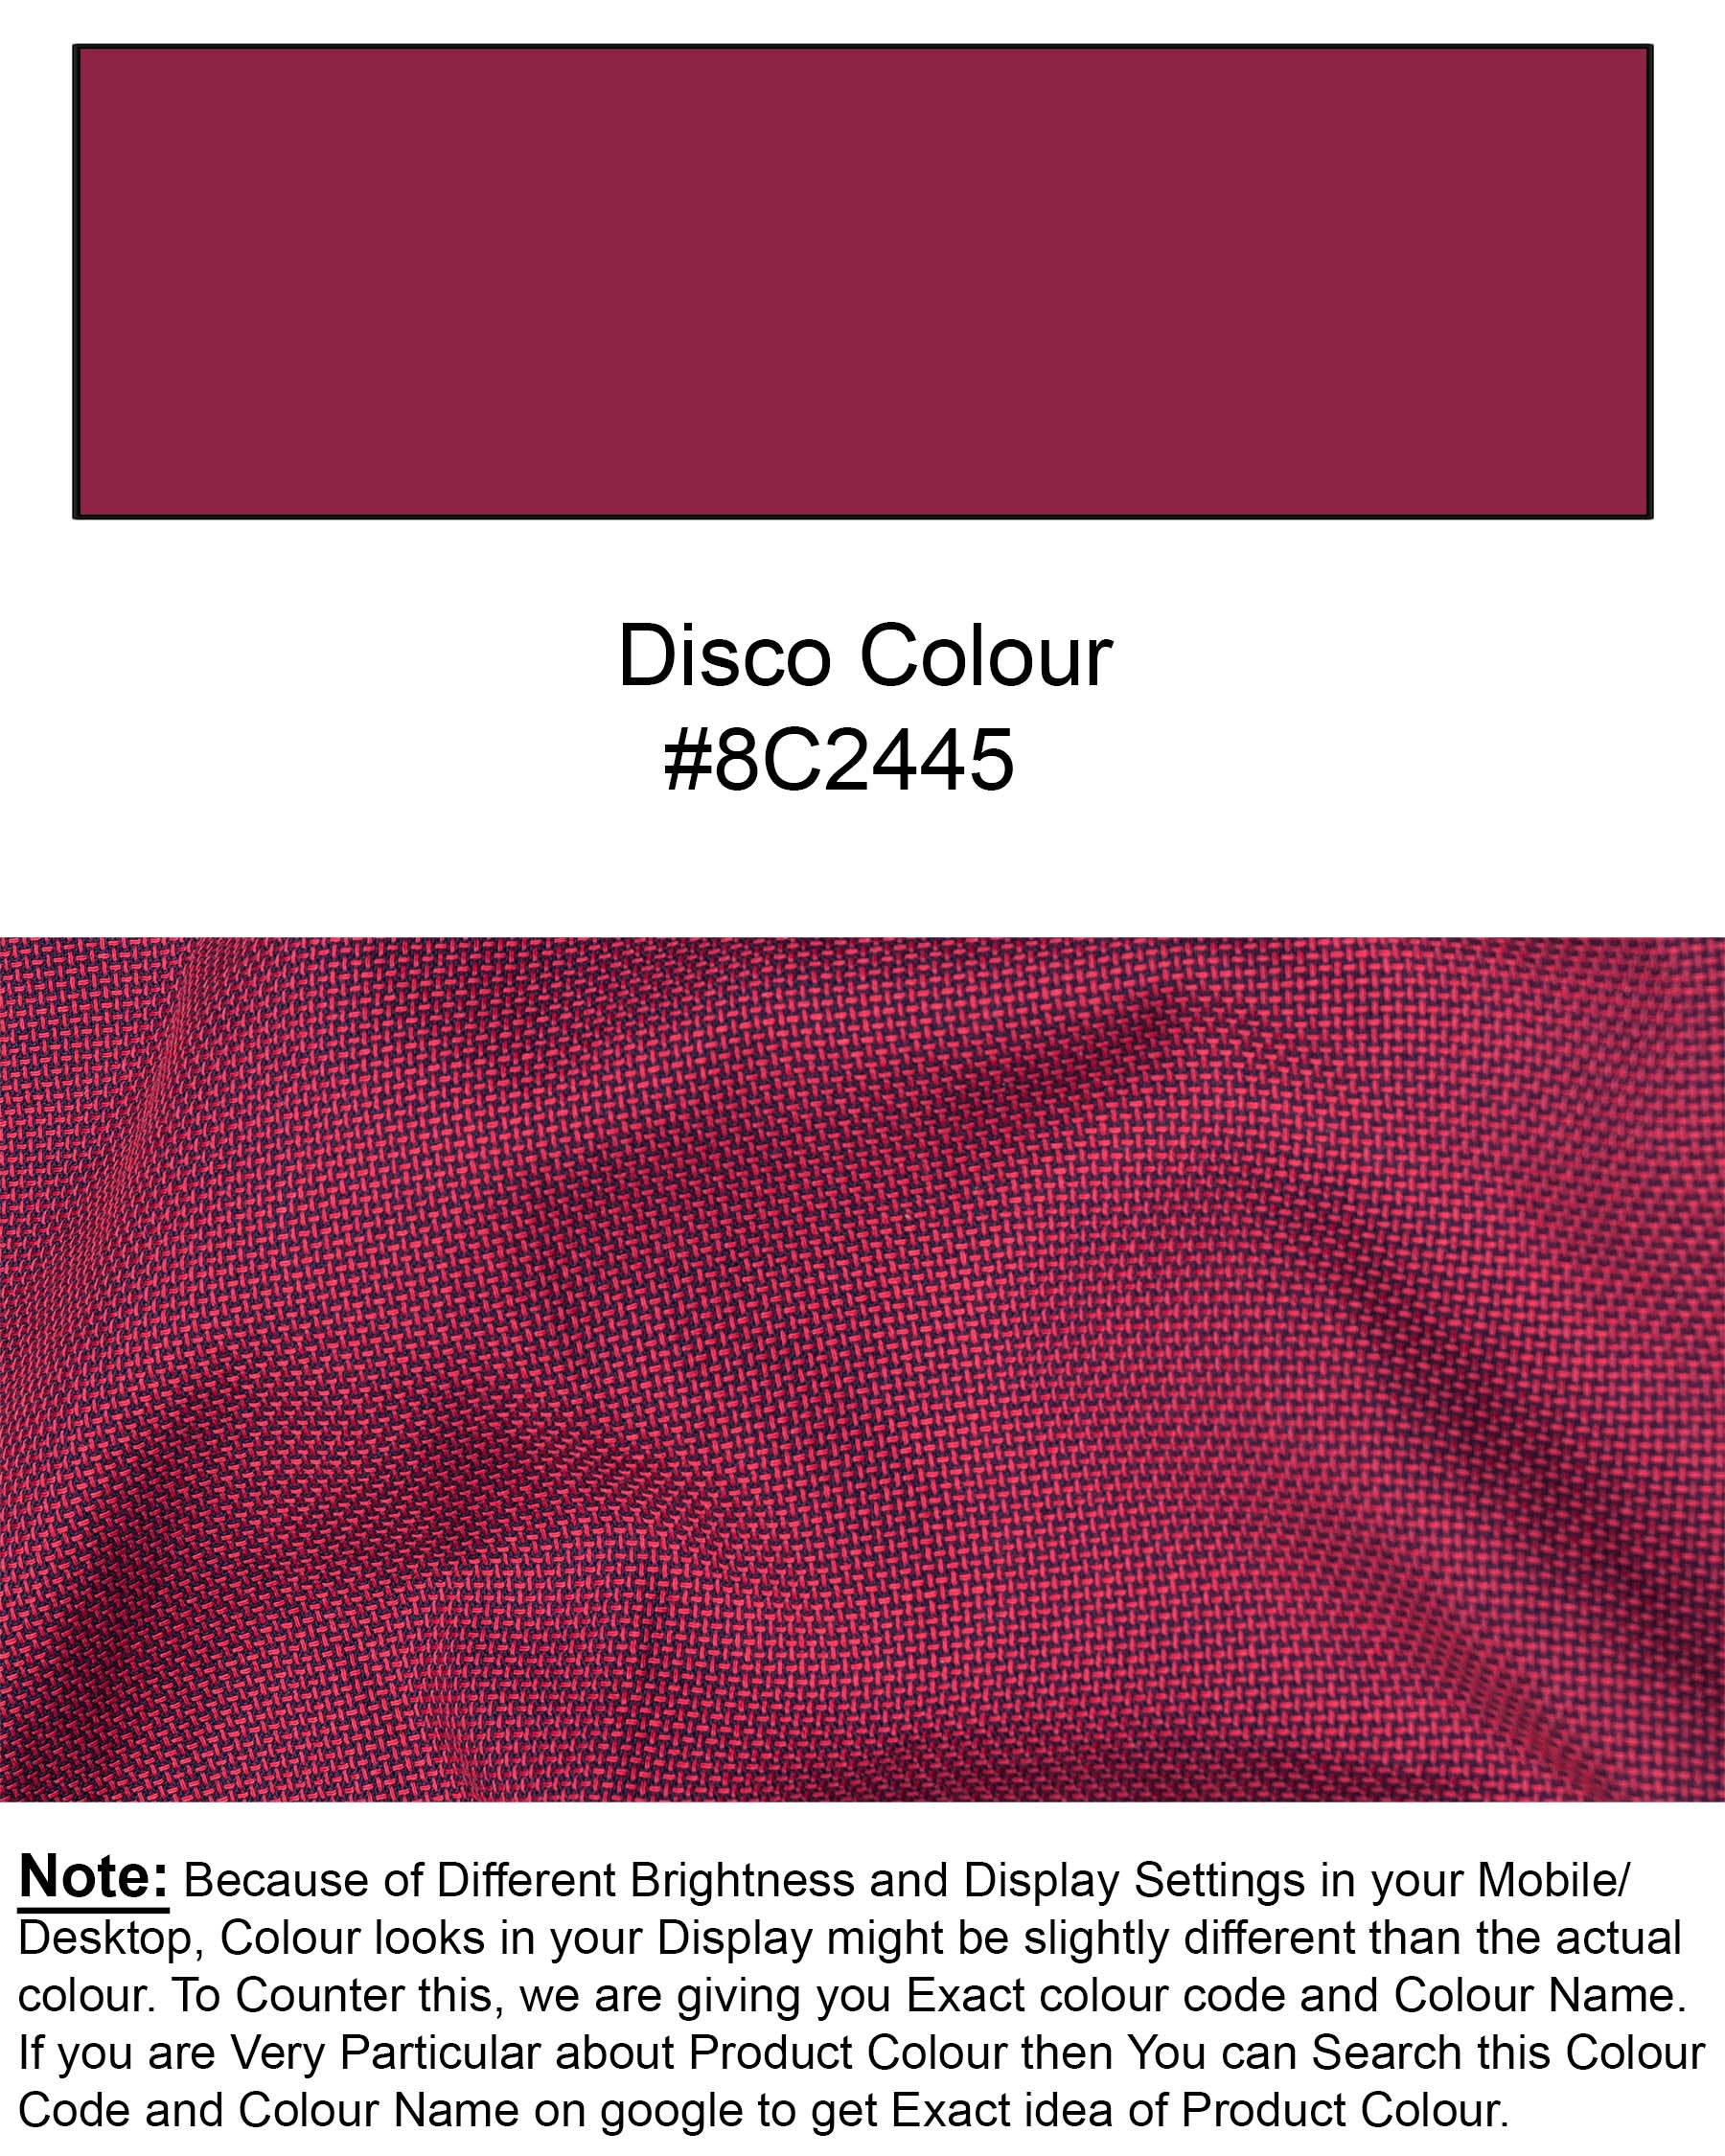 Disco Pink Dobby Textured Premium Giza Cotton Shirt 6323-BD-38,  6323-BD-H-38,  6323-BD-39,  6323-BD-H-39,  6323-BD-40,  6323-BD-H-40,  6323-BD-42,  6323-BD-H-42,  6323-BD-44,  6323-BD-H-44,  6323-BD-46,  6323-BD-H-46,  6323-BD-48,  6323-BD-H-48,  6323-BD-50,  6323-BD-H-50,  6323-BD-52,  6323-BD-H-52